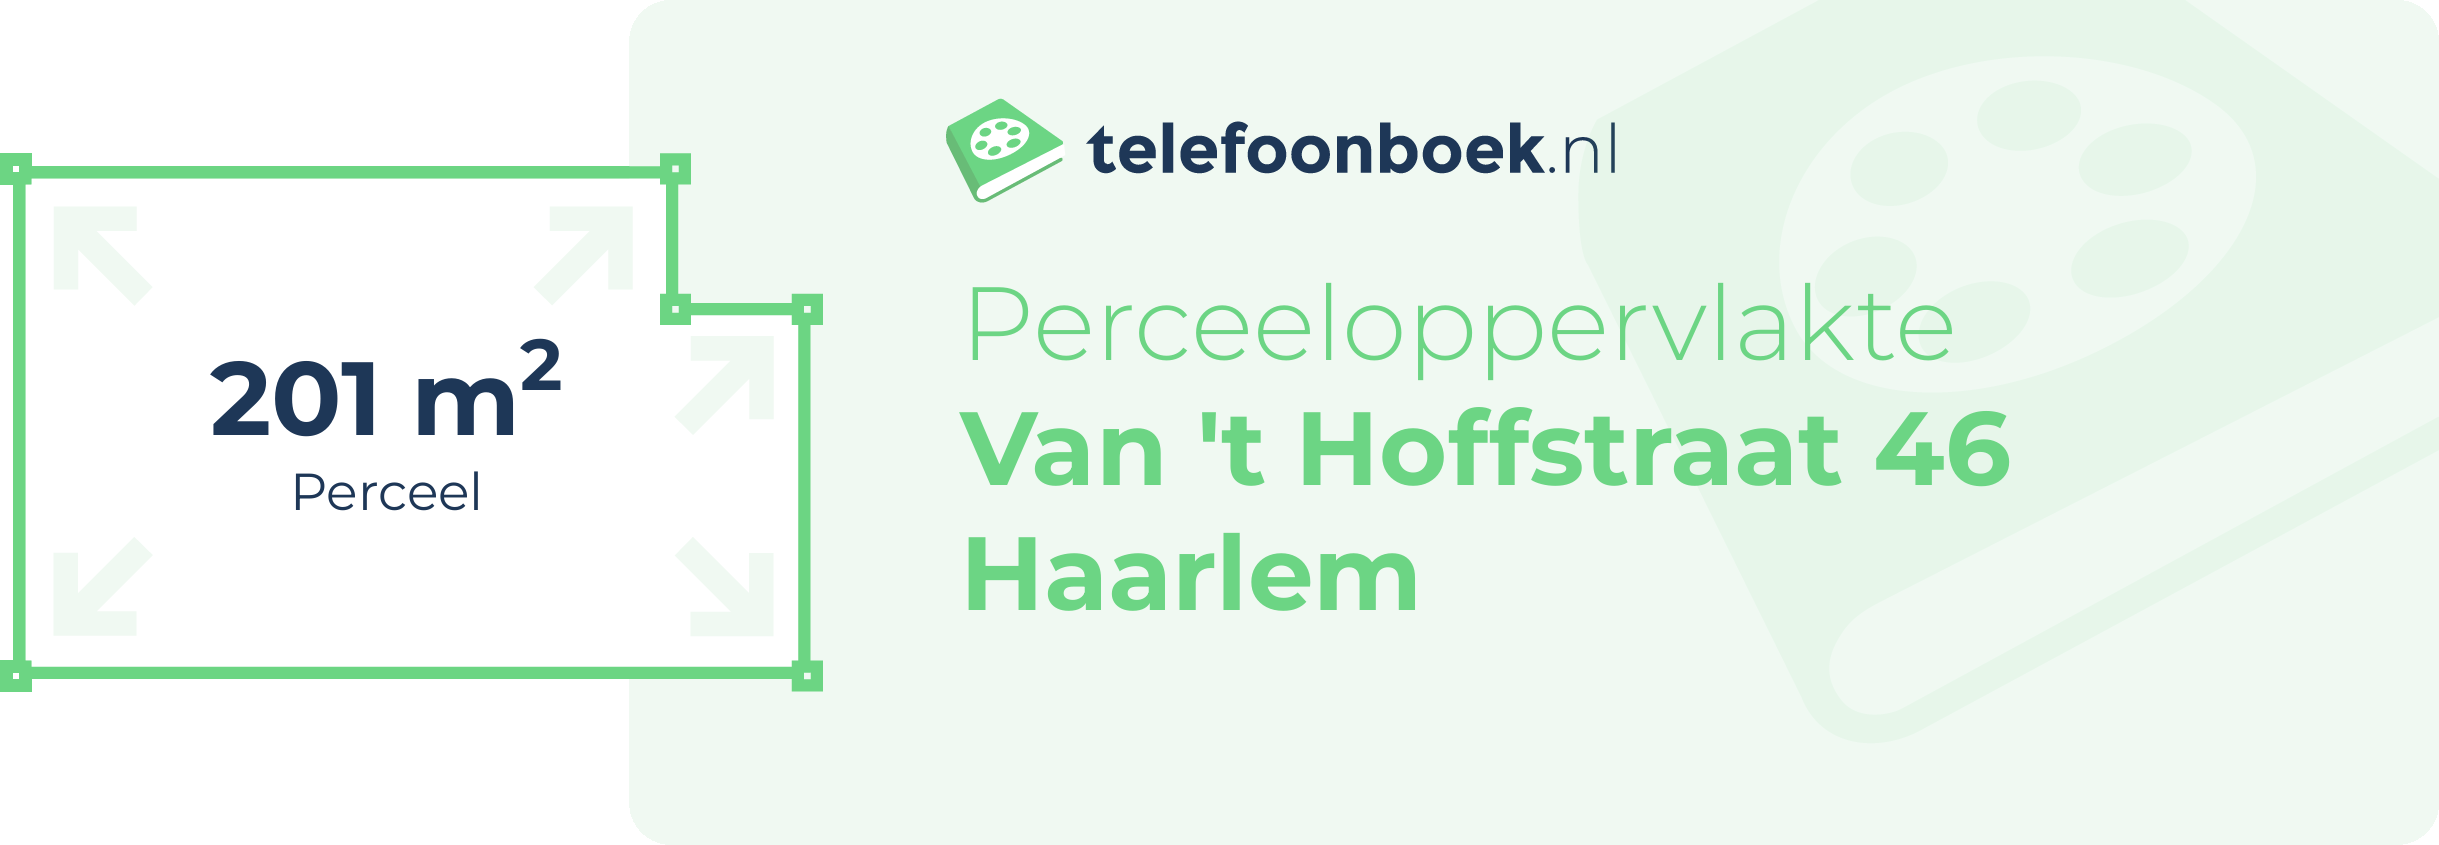 Perceeloppervlakte Van 't Hoffstraat 46 Haarlem